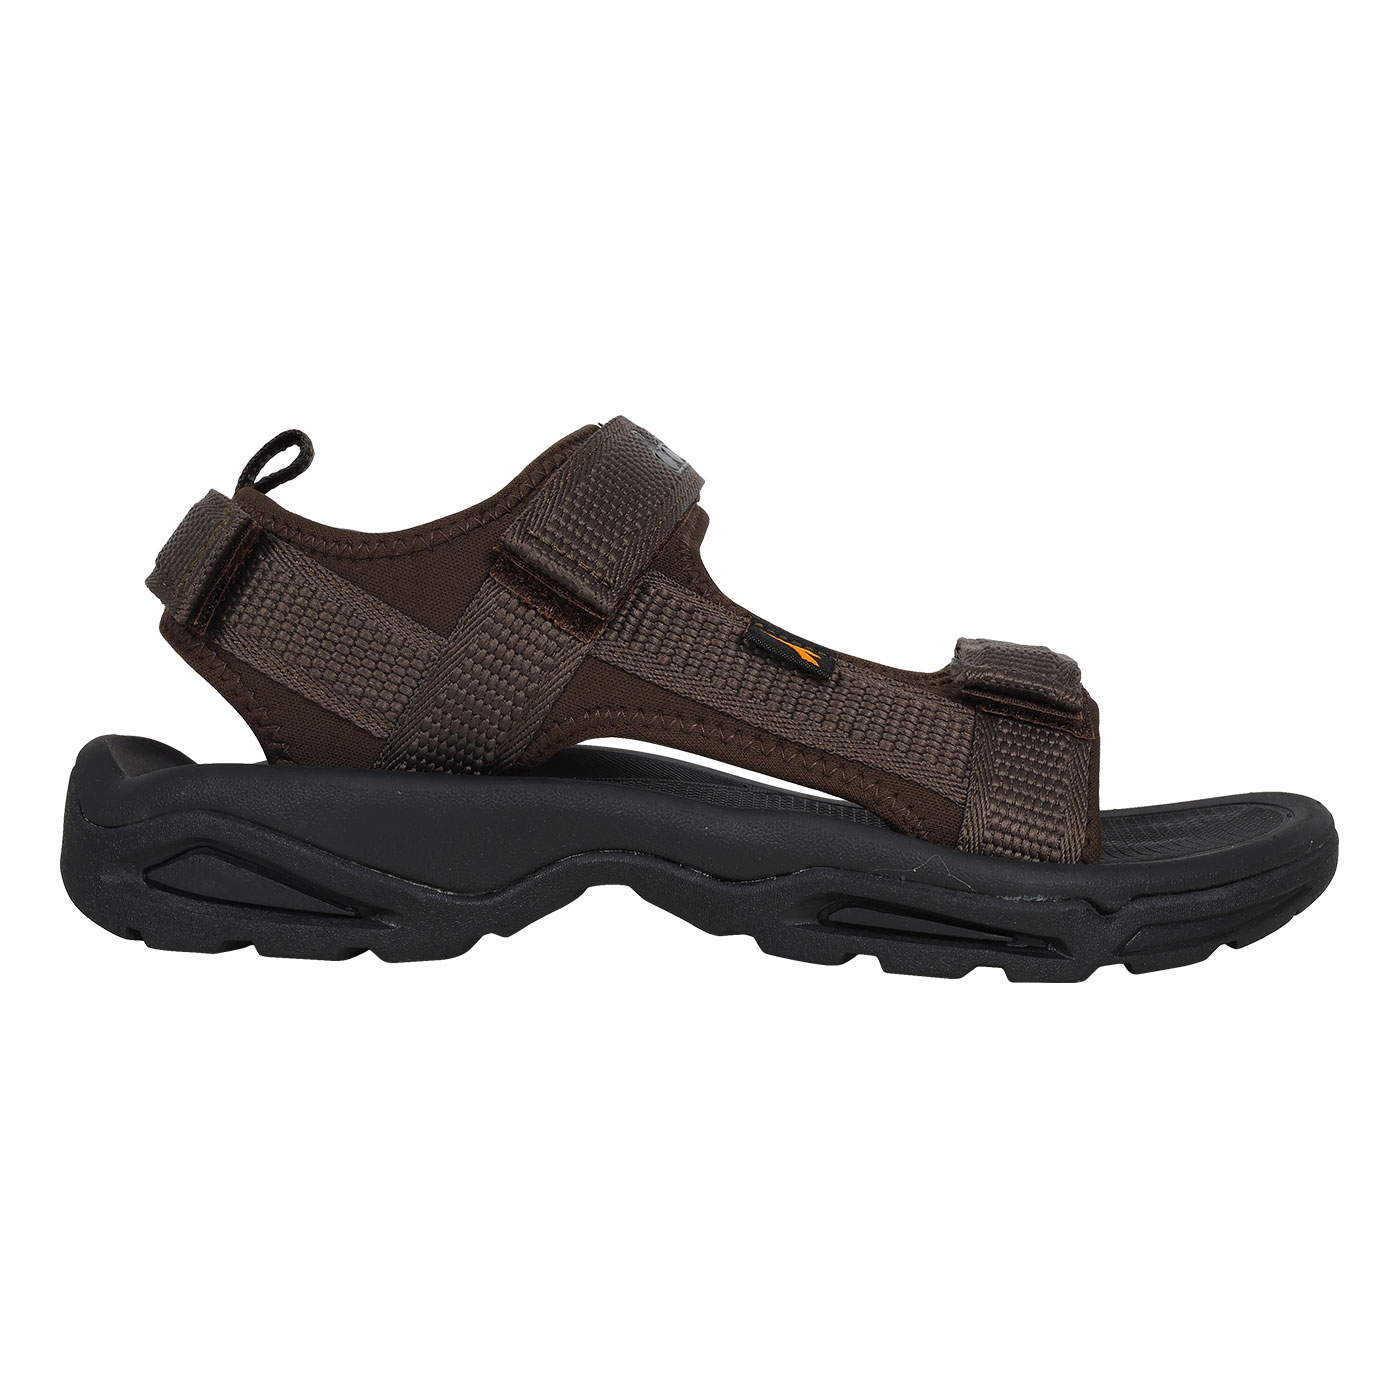 DIADORA 男款織帶運動涼鞋  DA71362 - 深褐黑